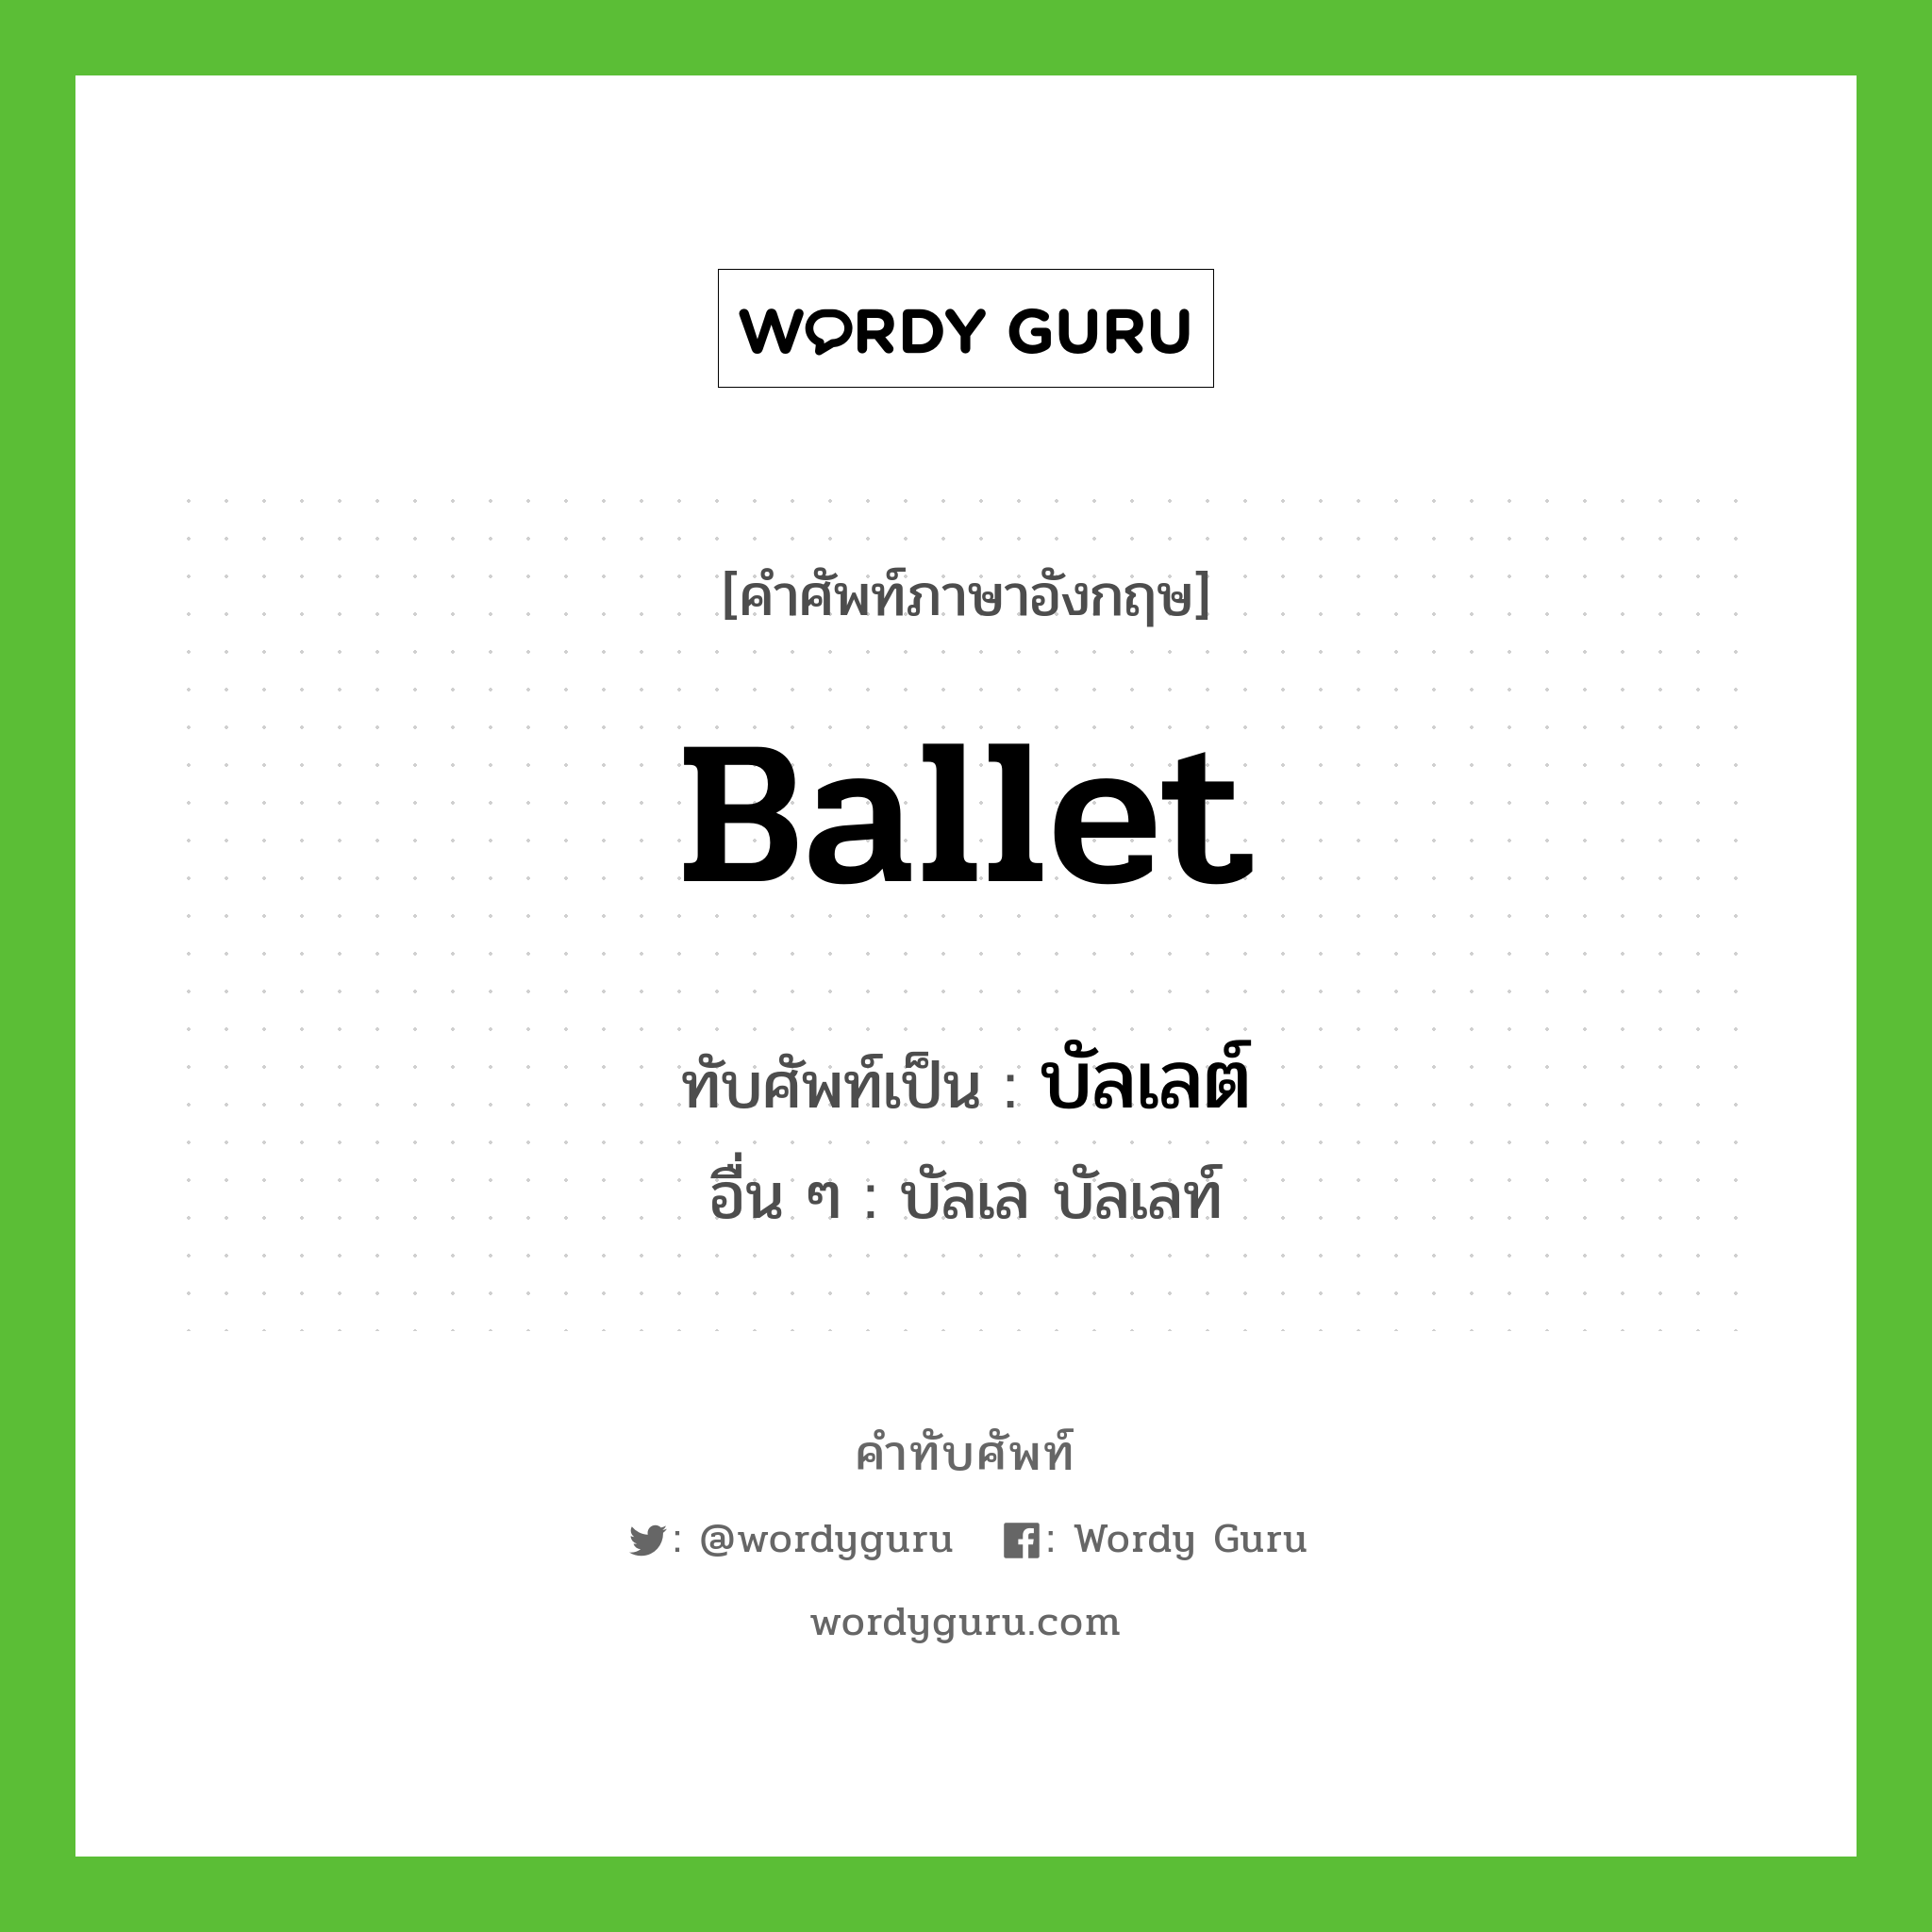 ballet เขียนเป็นคำไทยว่าอะไร?, คำศัพท์ภาษาอังกฤษ ballet ทับศัพท์เป็น บัลเลต์ อื่น ๆ บัลเล บัลเลท์